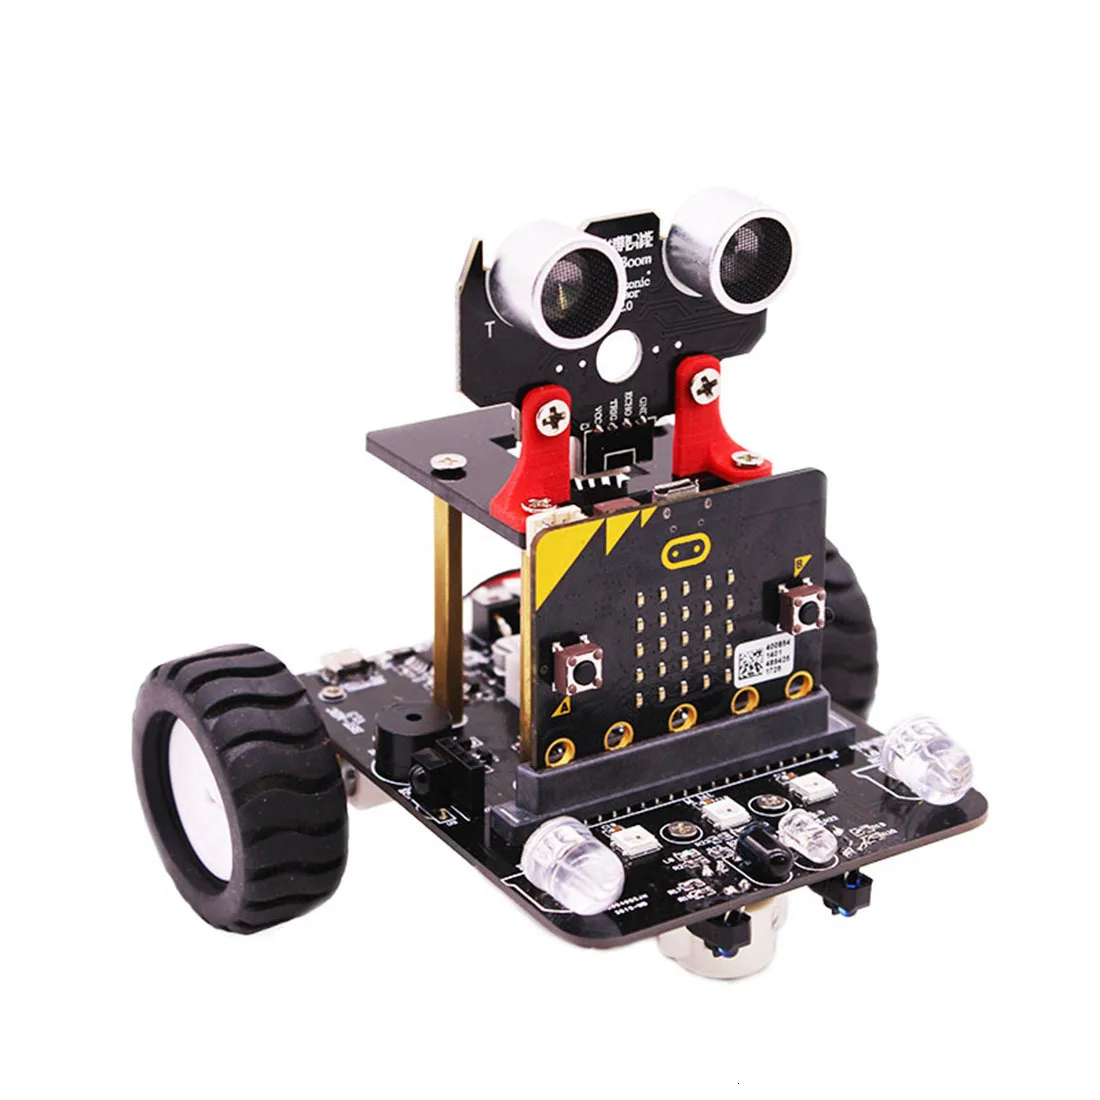 2019 новый графический программируемый робот автомобиль с Bluetooth ИК и отслеживающий модуль стебель паровой робот автомобиль игрушка для